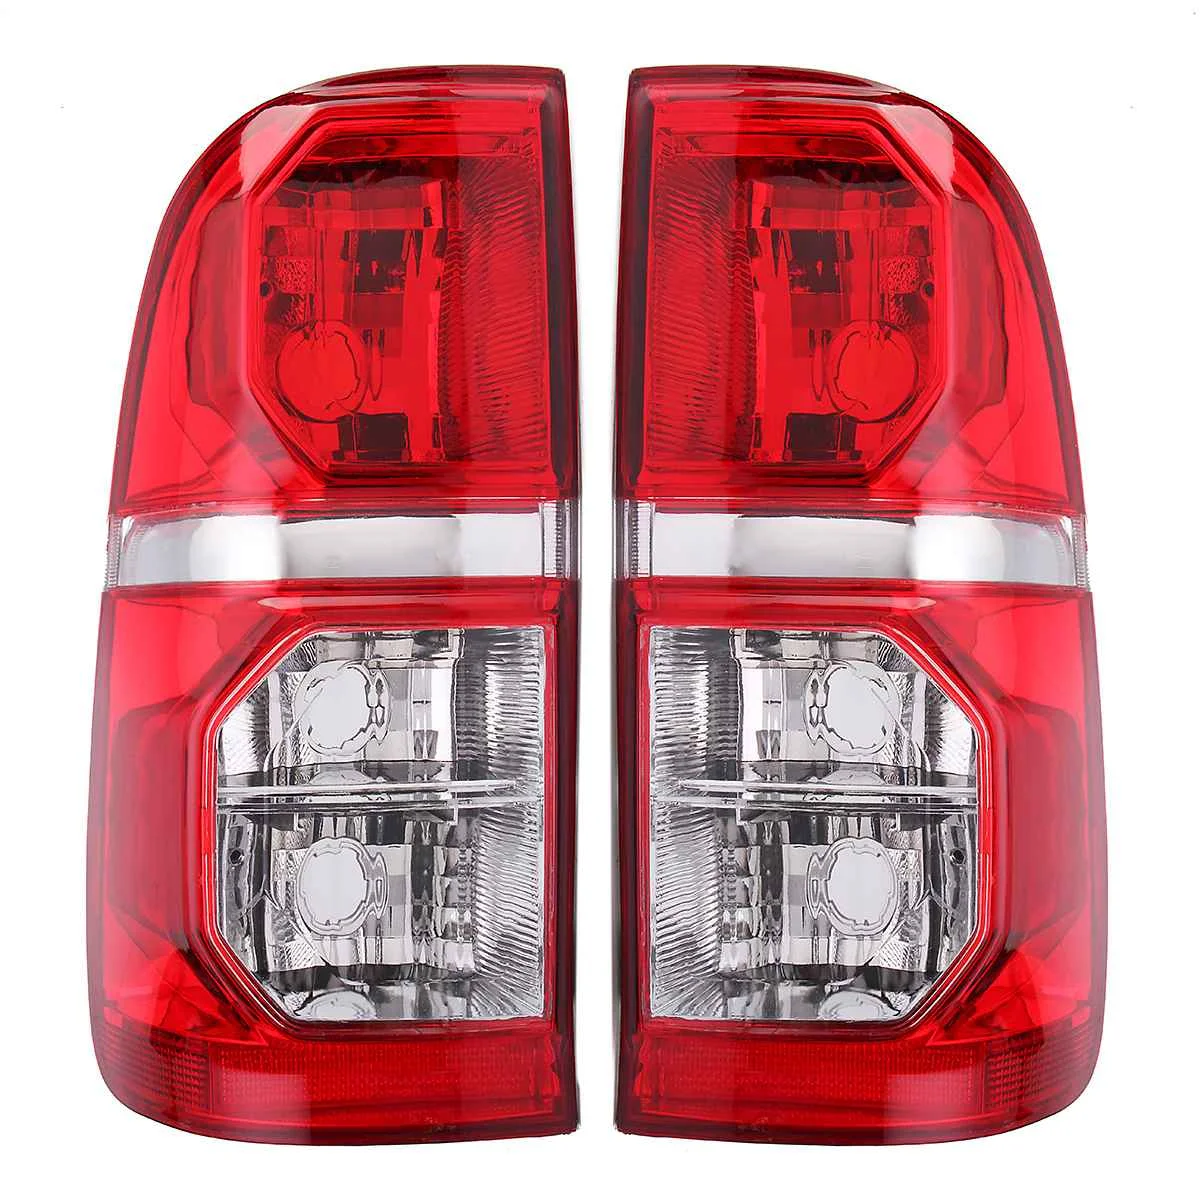 1 шт. 2 шт. хвост задний фонарь тормоза Предупреждение лампы без красный задний светильник фонарь стоп-сигнала для Toyota Hilux 2005- стайлинга автомобилей